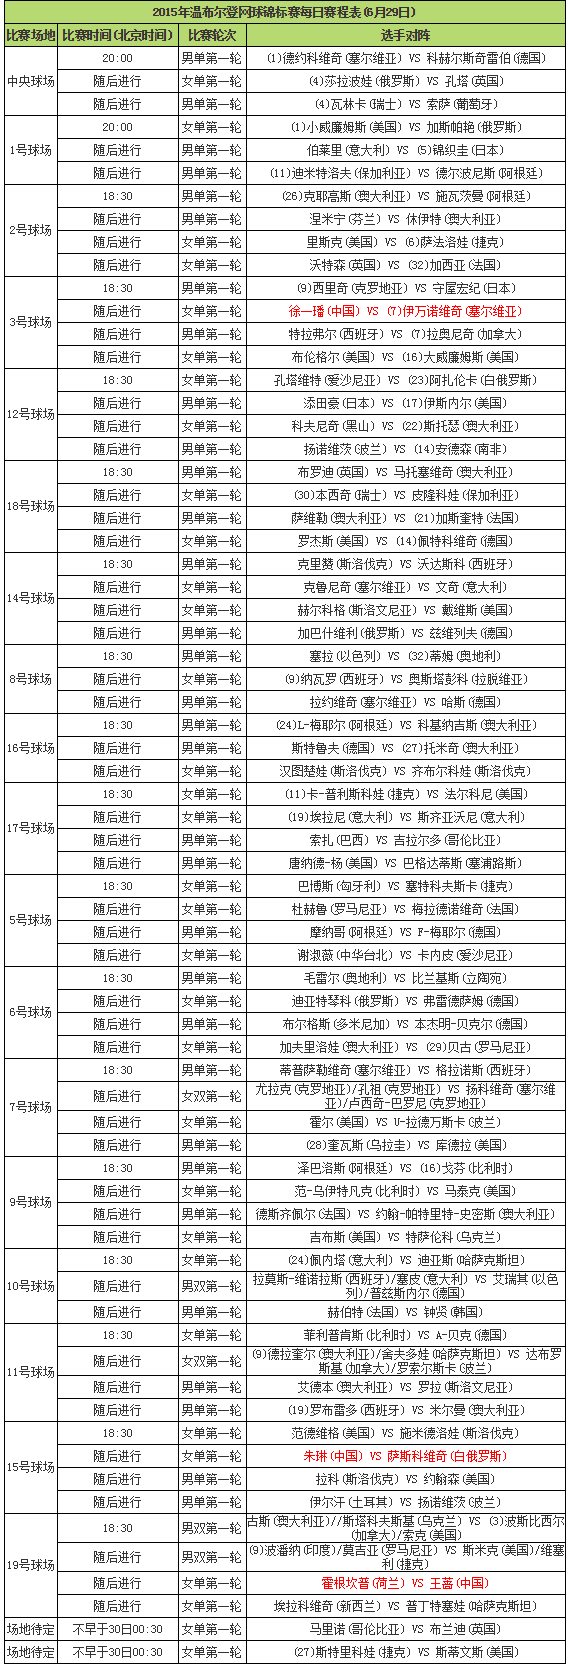 【6月29日】2015年温网第一天完整赛程